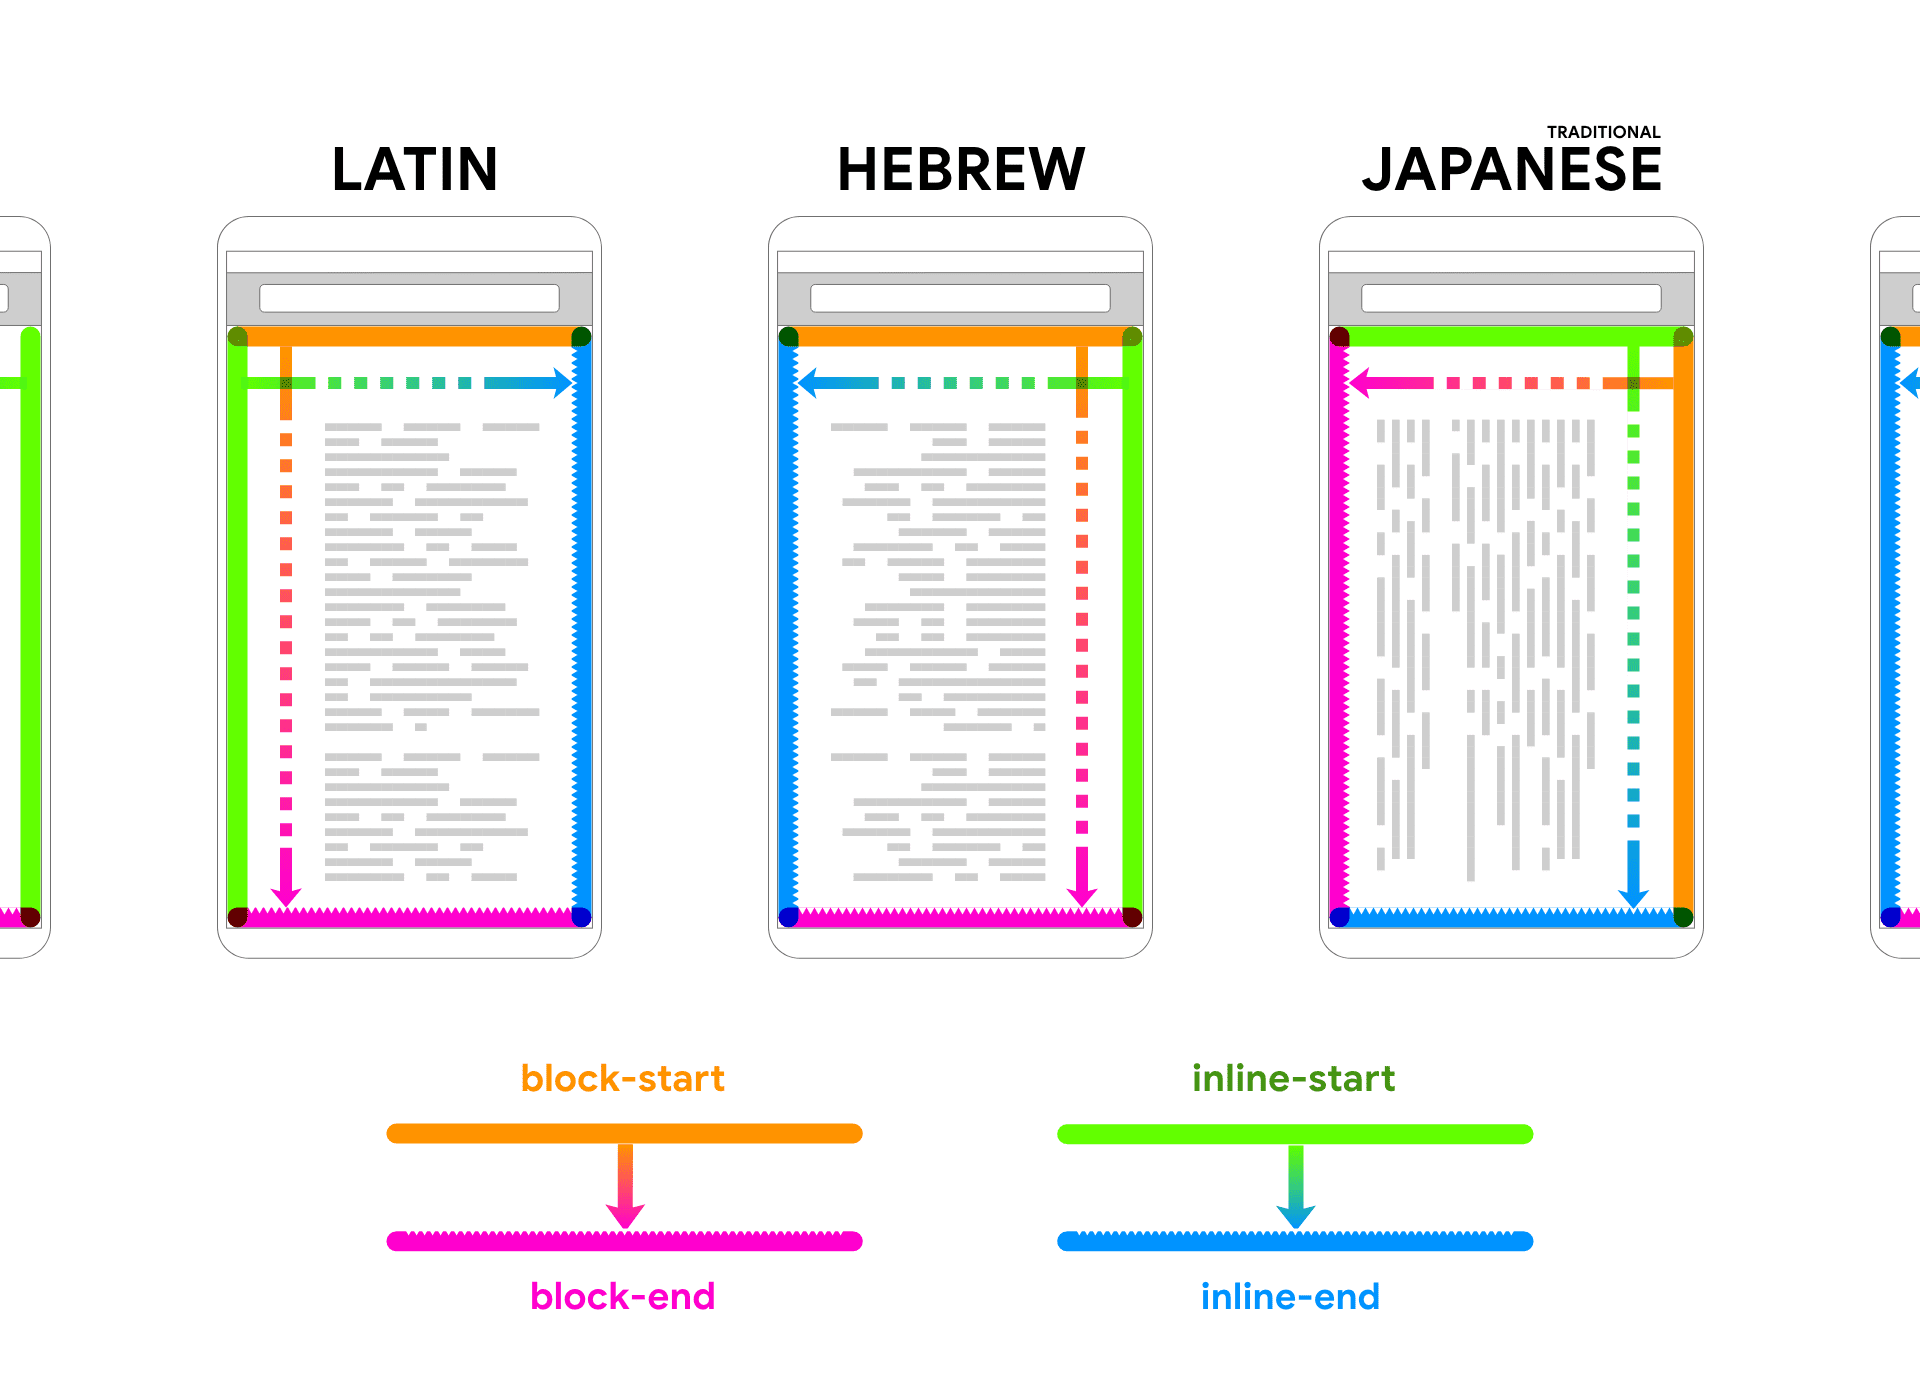 ภาษาละติน ฮีบรู และญี่ปุ่นแสดงข้อความตัวยึดตำแหน่งภายในเฟรมอุปกรณ์ ลูกศรและสีตามข้อความเพื่อช่วยเชื่อมโยง 2 ทิศทางของบล็อกและแทรกในบรรทัด